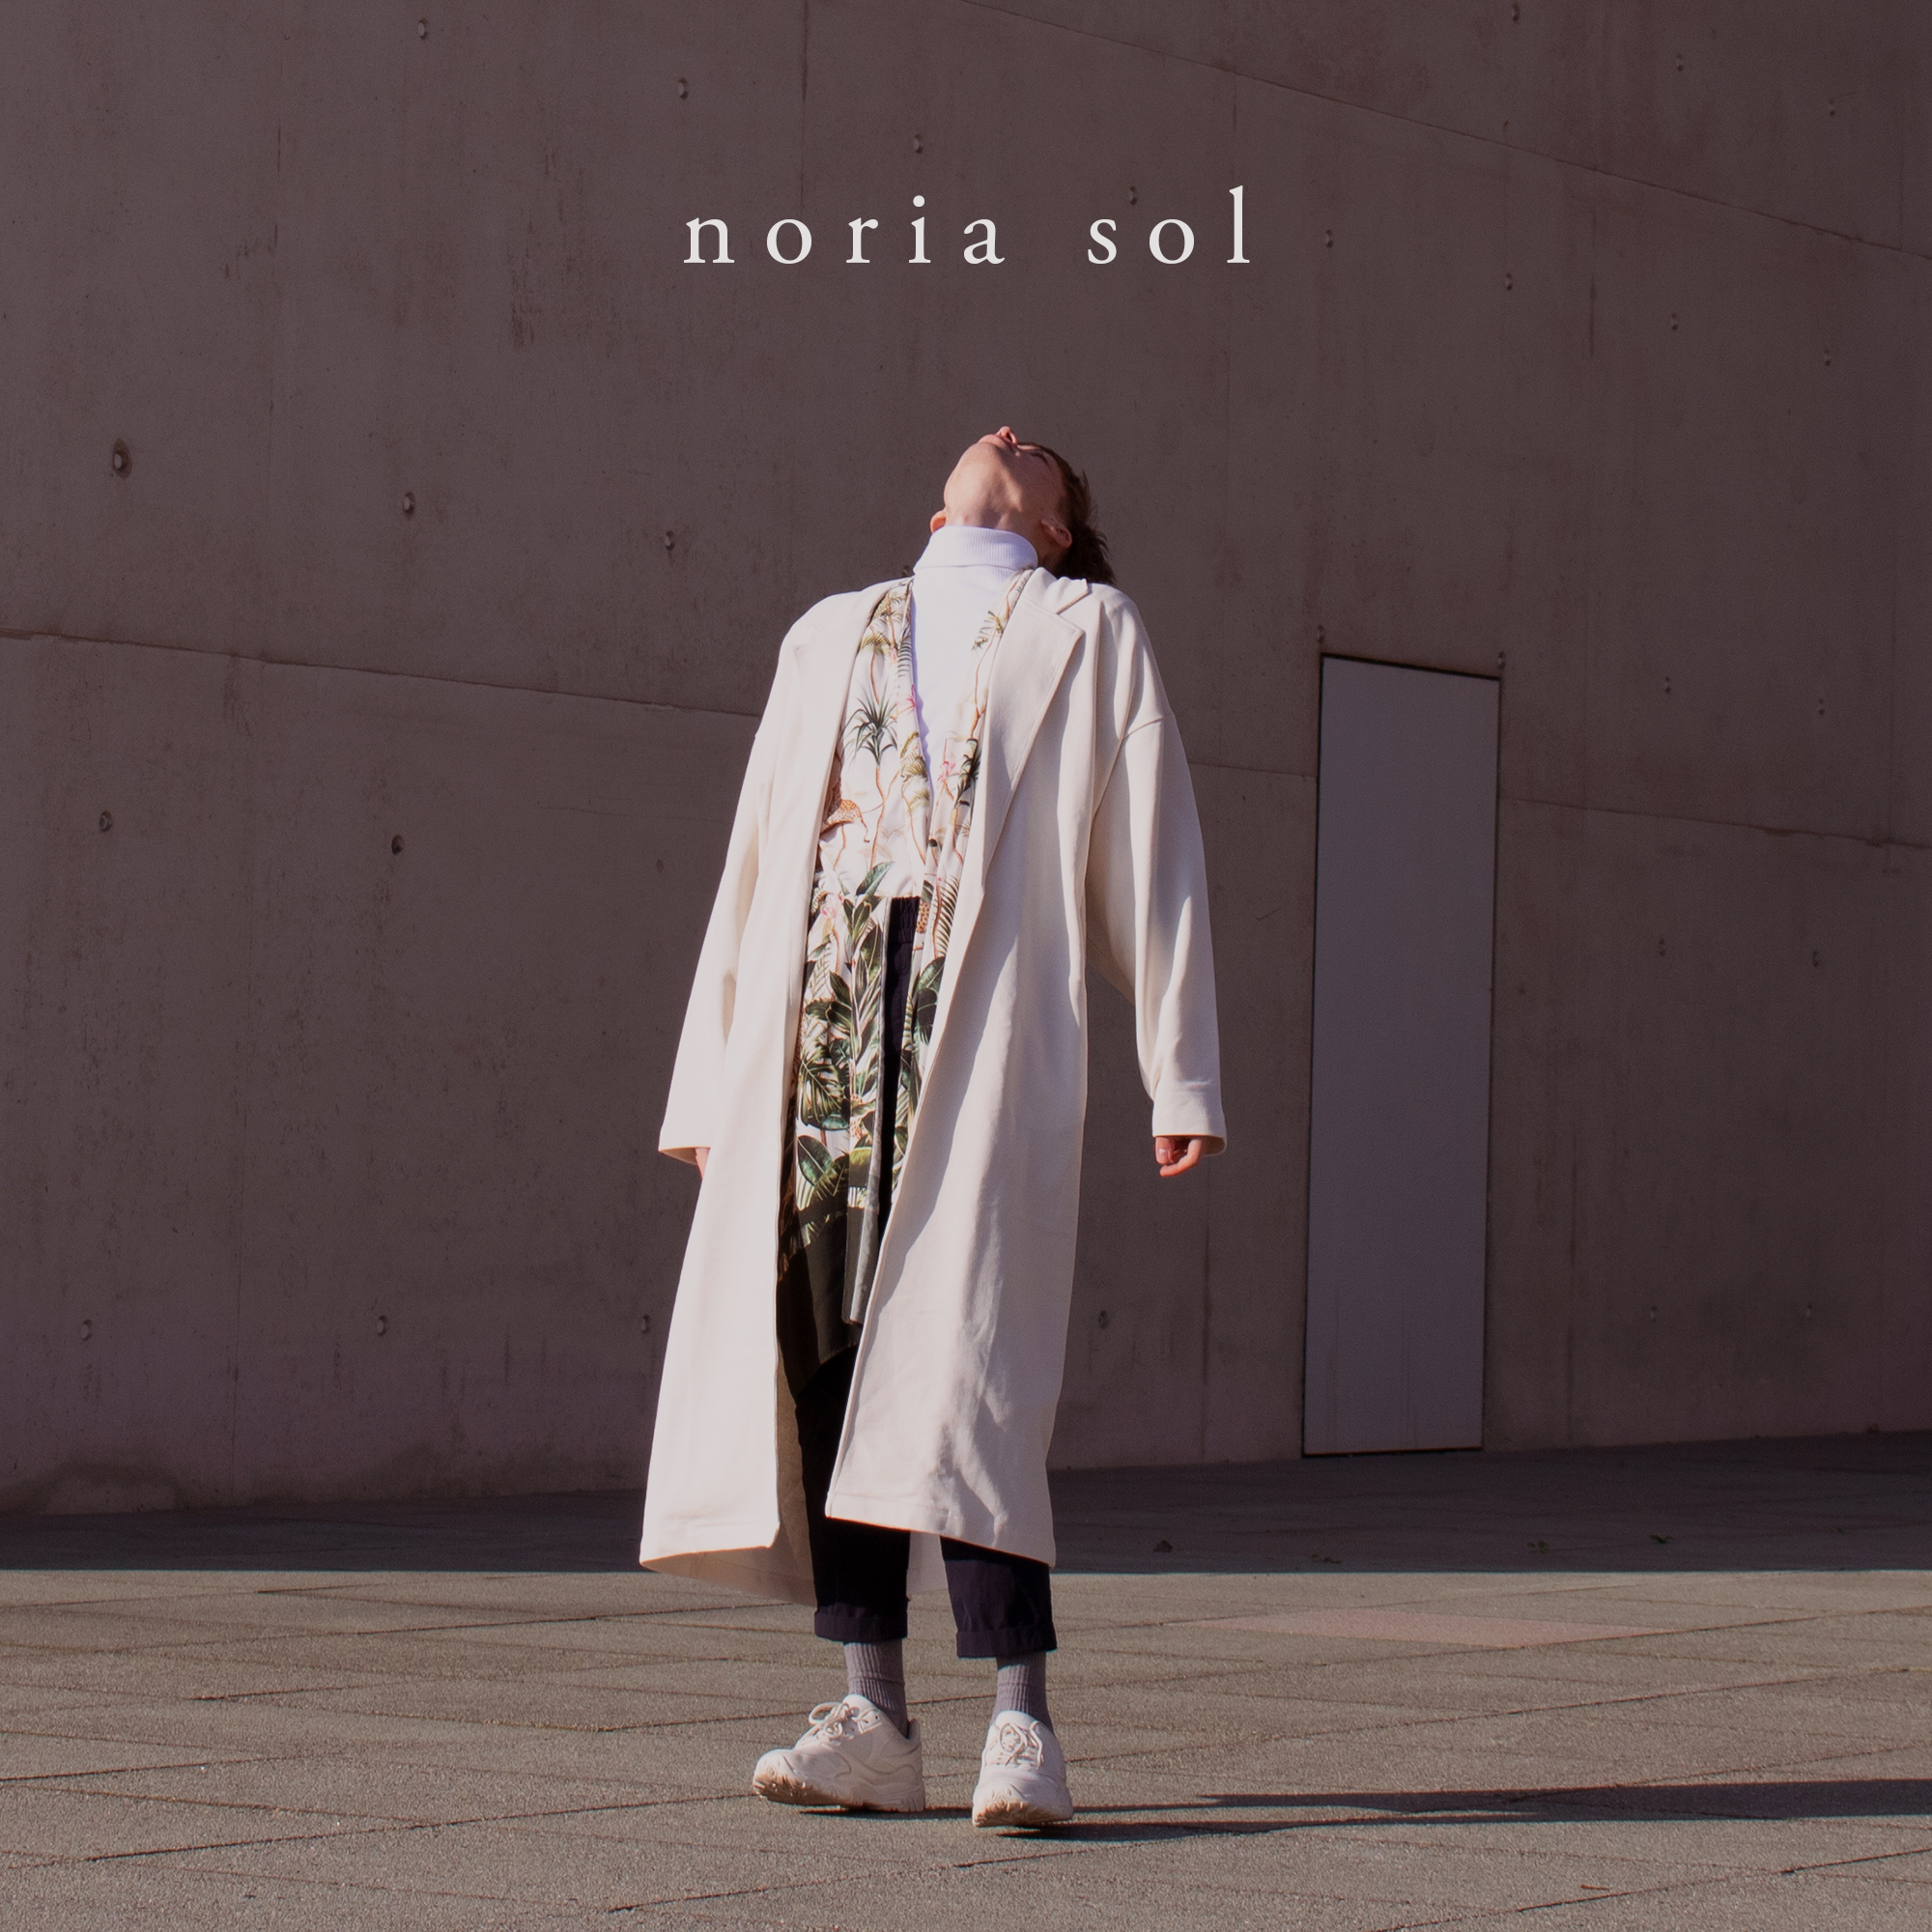 Enemy Noria Sol